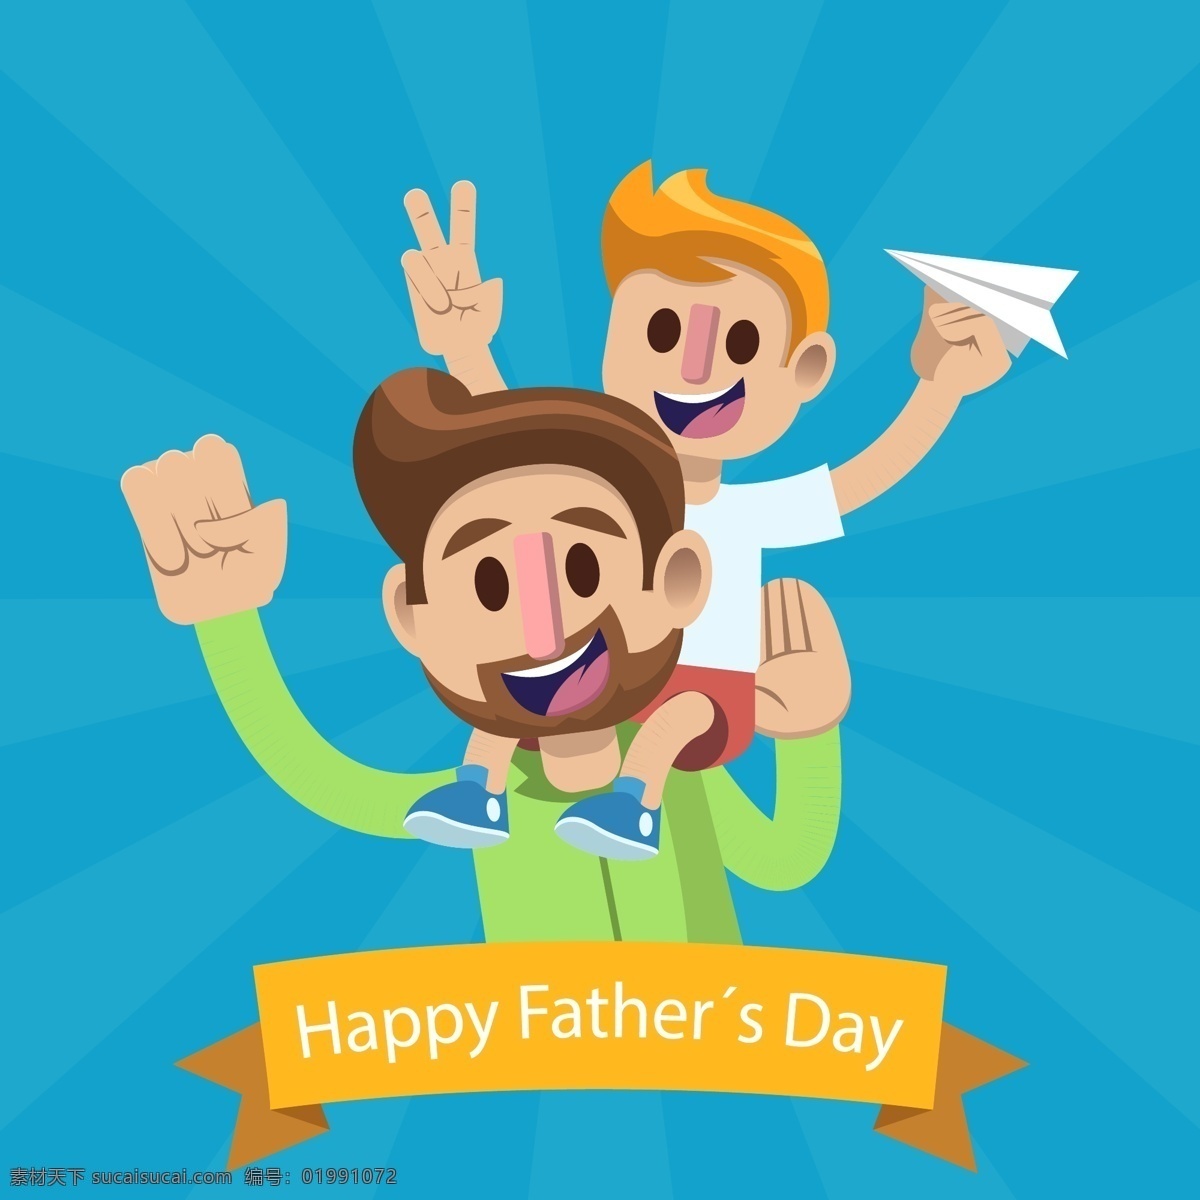 父亲节 卡通 爱 父亲节素材 父亲节设计 父亲节矢量图 父亲节元素 父情